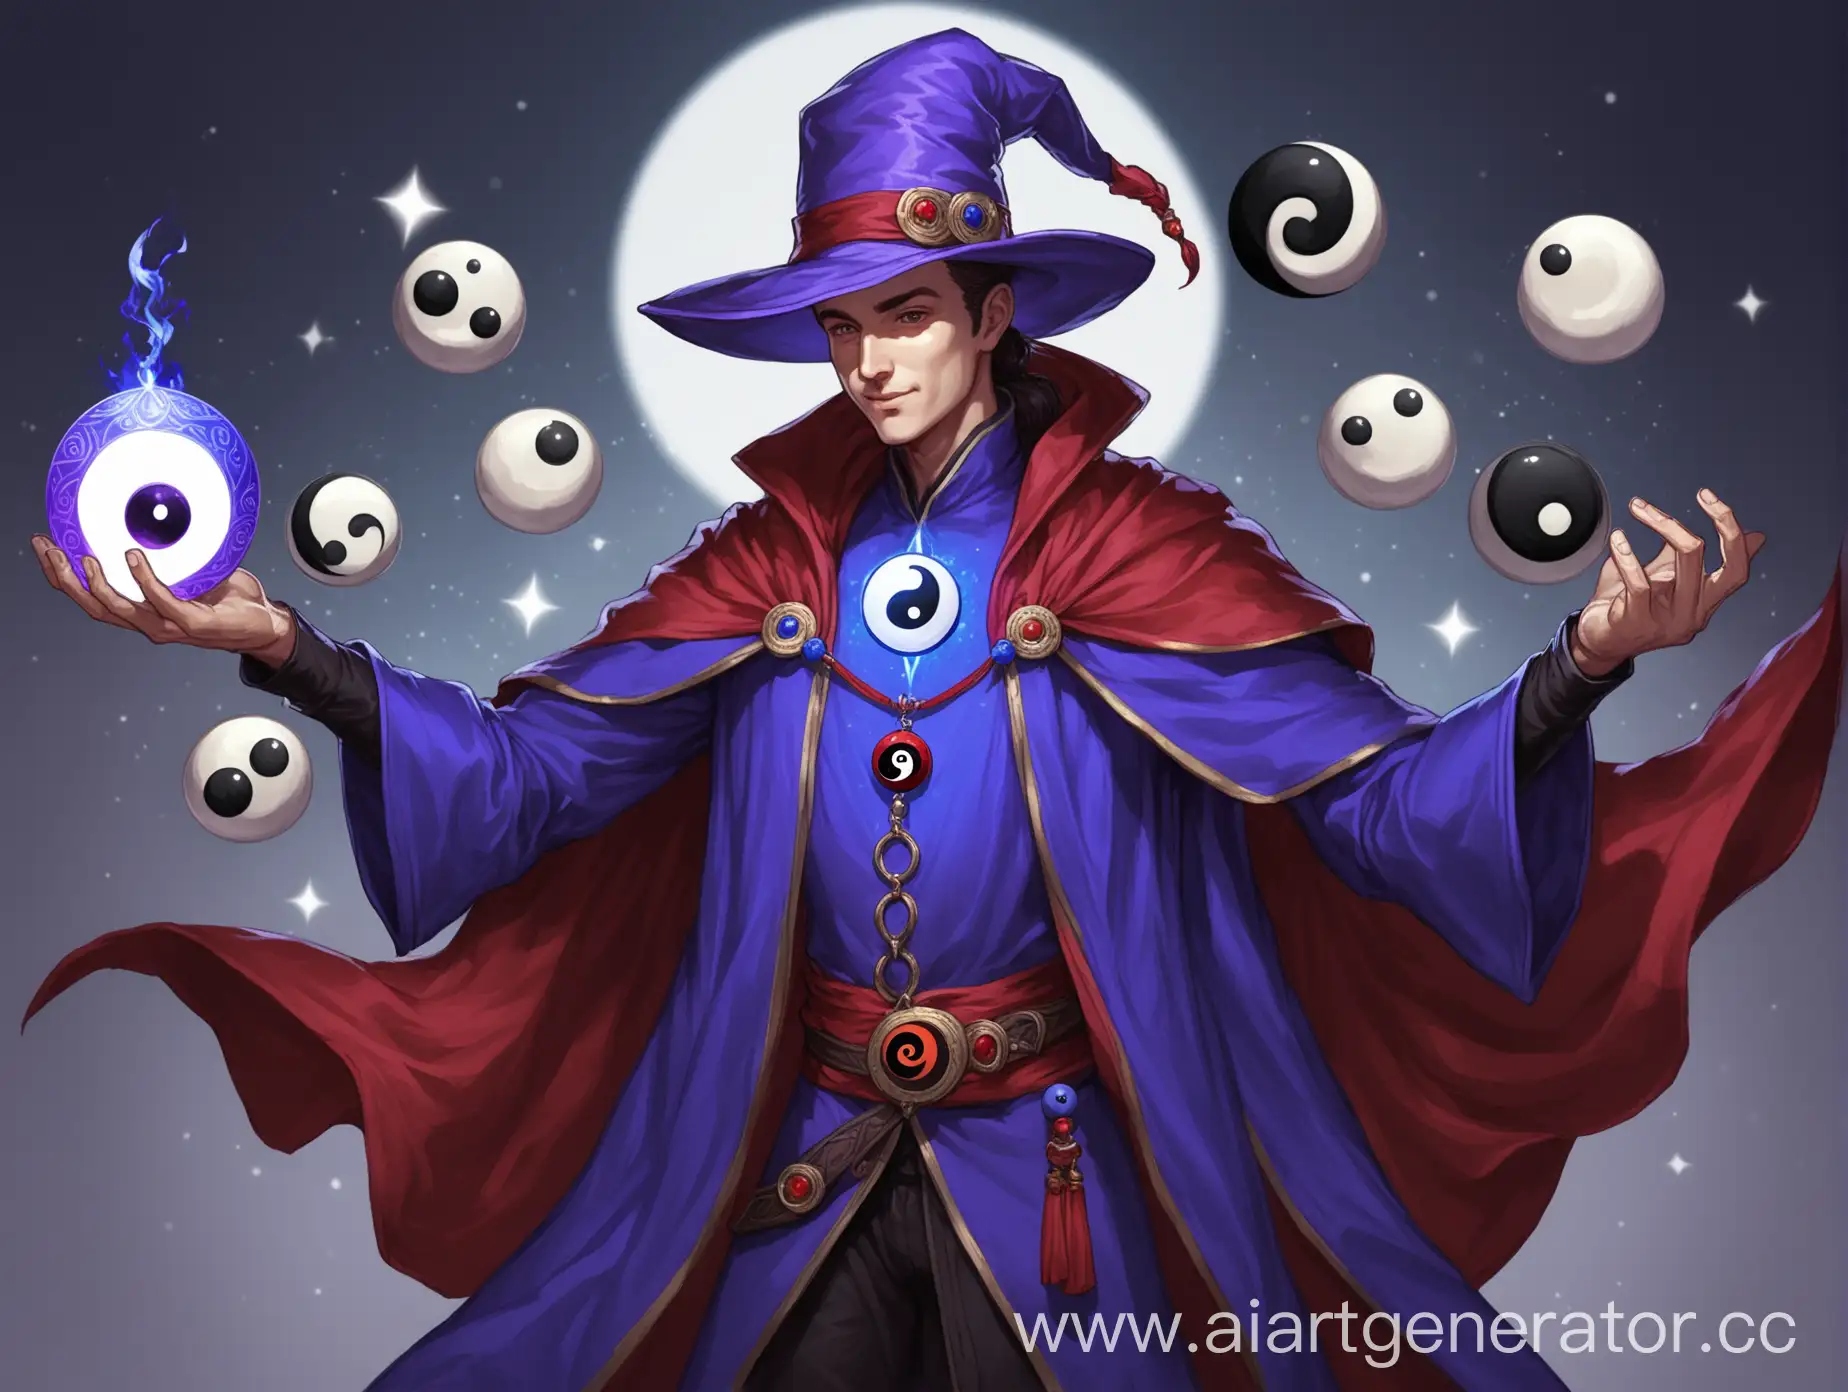 человек мужчина волшебник днд, фиолетовая шляпа, сине-красная мантия, амулет на груди инь-янь